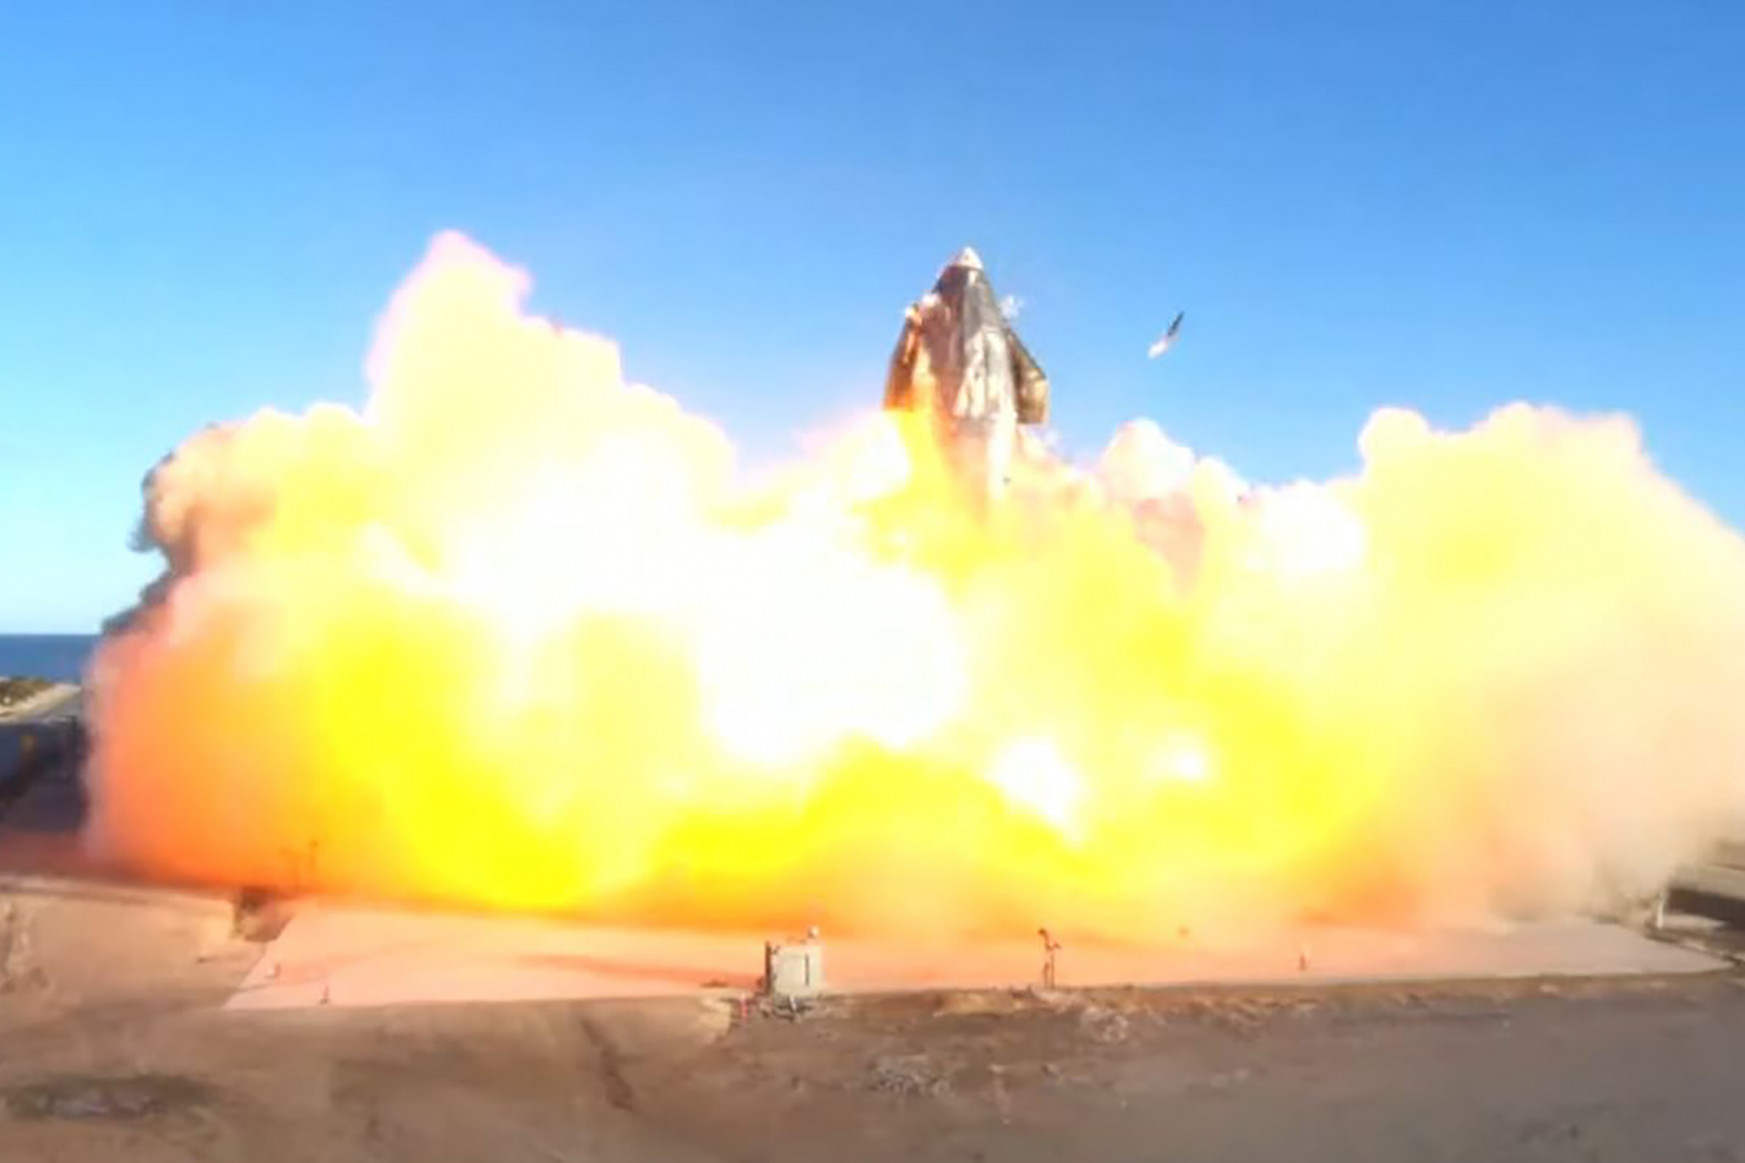 Földet érés után felrobbant a SpaceX kísérleti rakétája